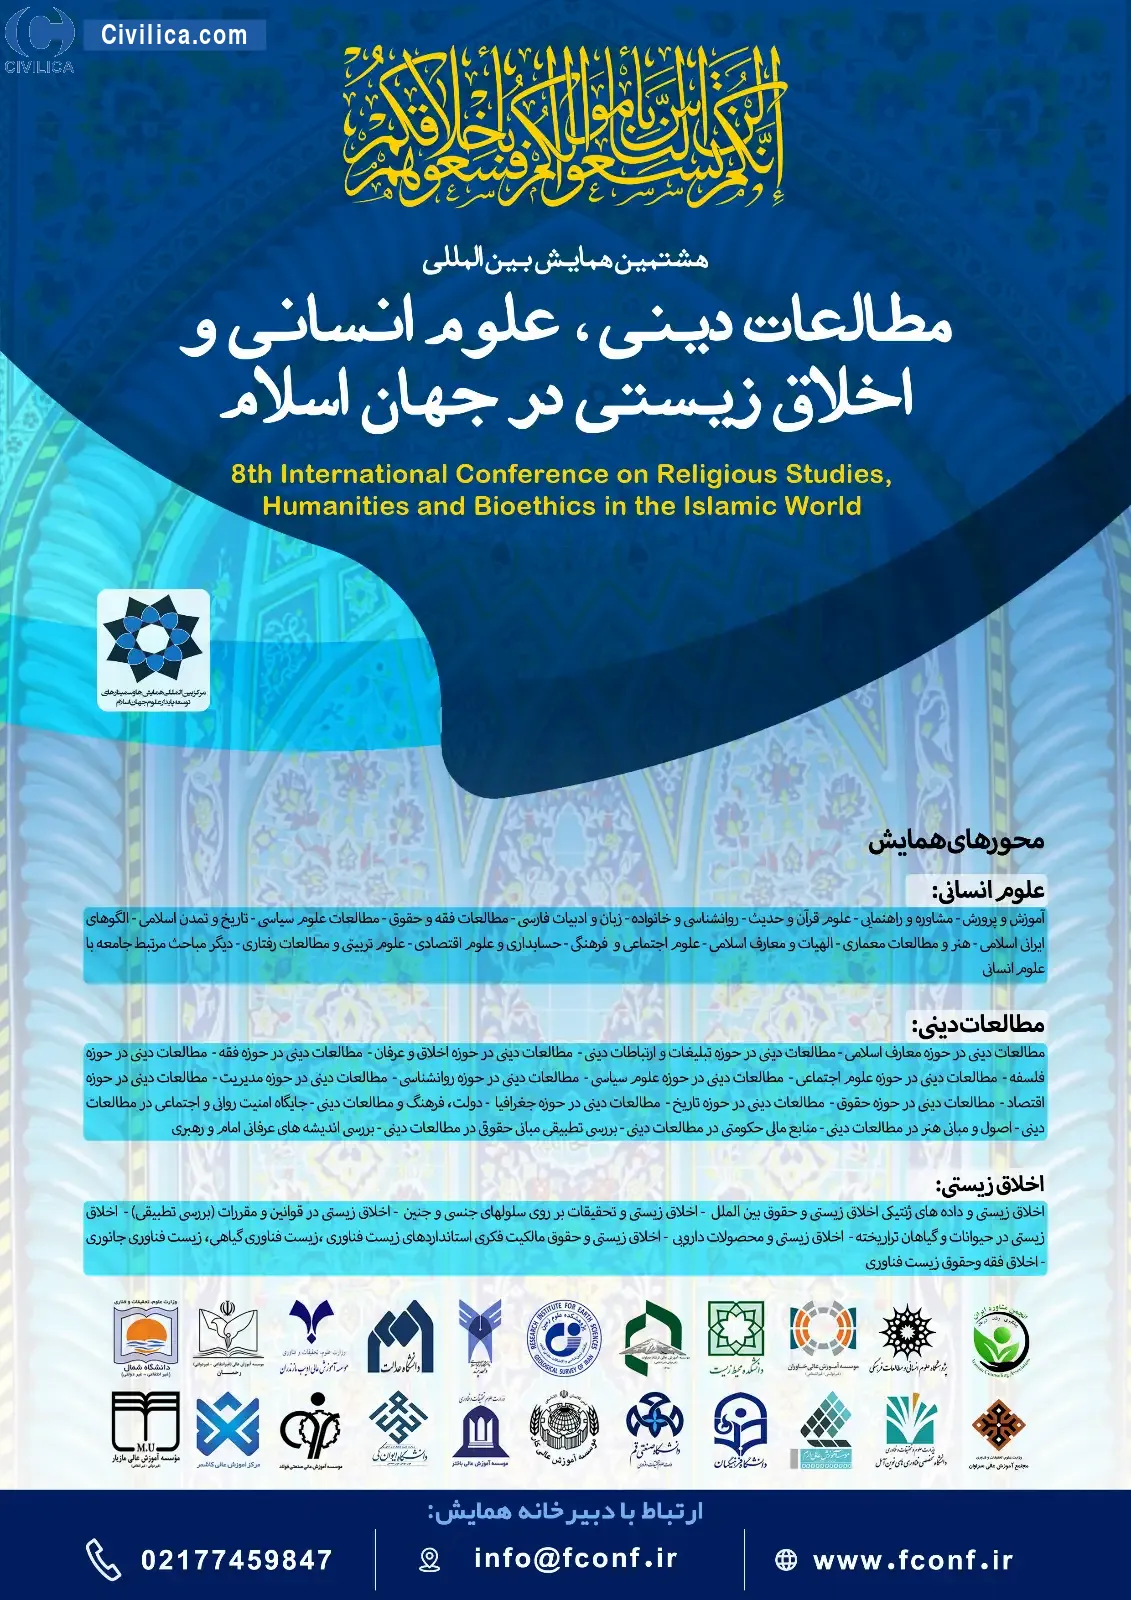 هشتمین همایش بین المللی مطالعات دینی، علوم انسانی و اخلاق زیستی در جهان اسلام